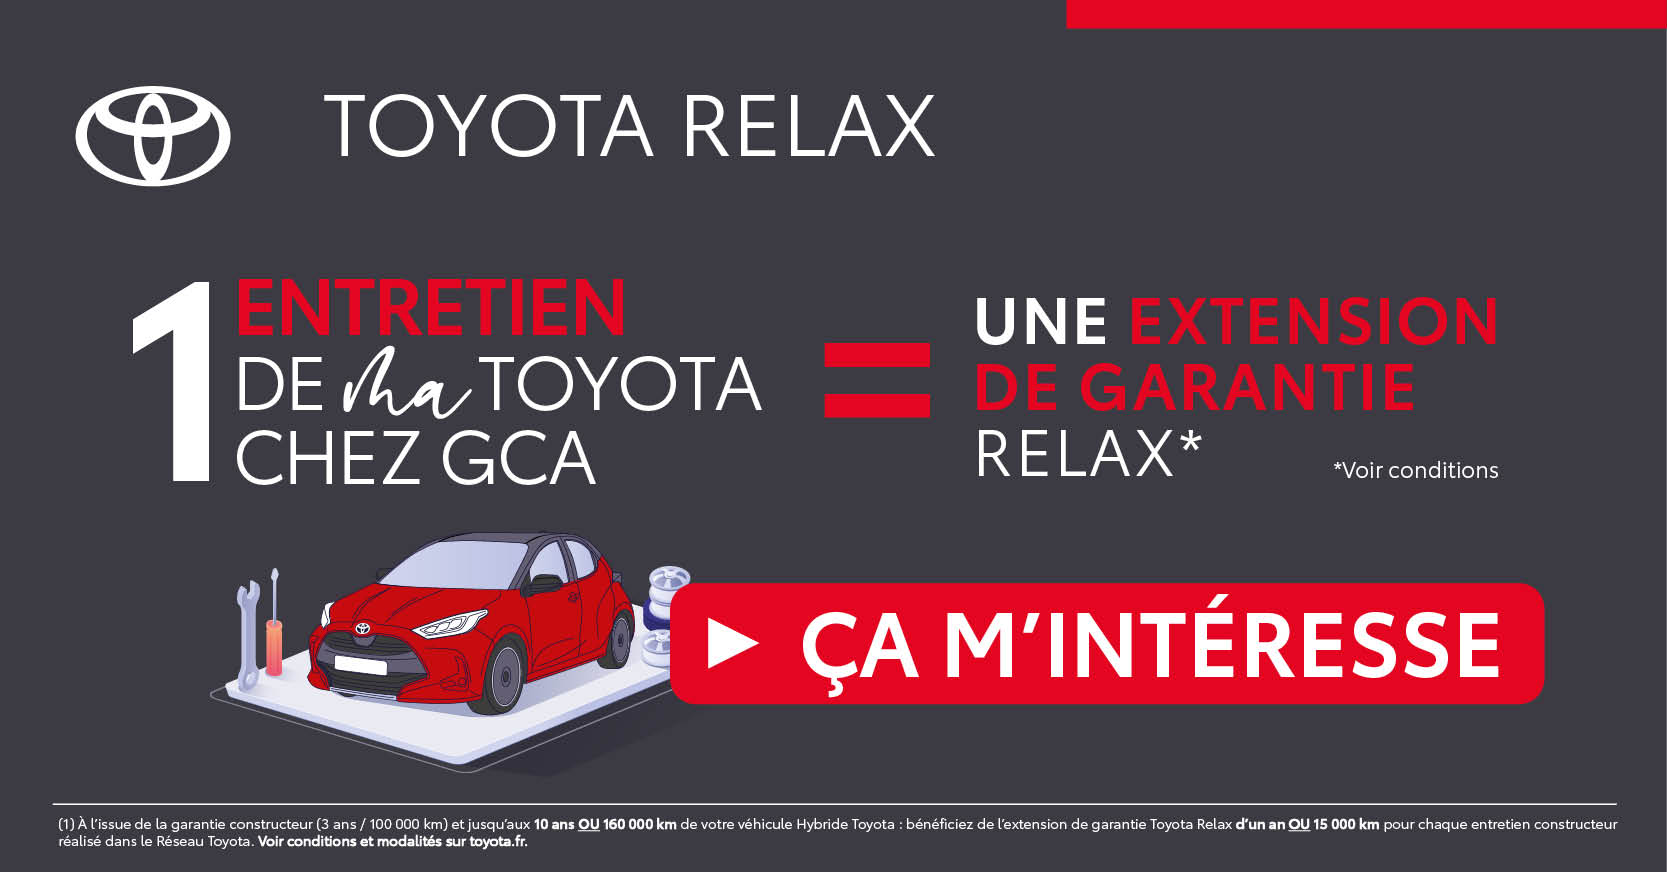 Toyota relax entretien extension de garantie